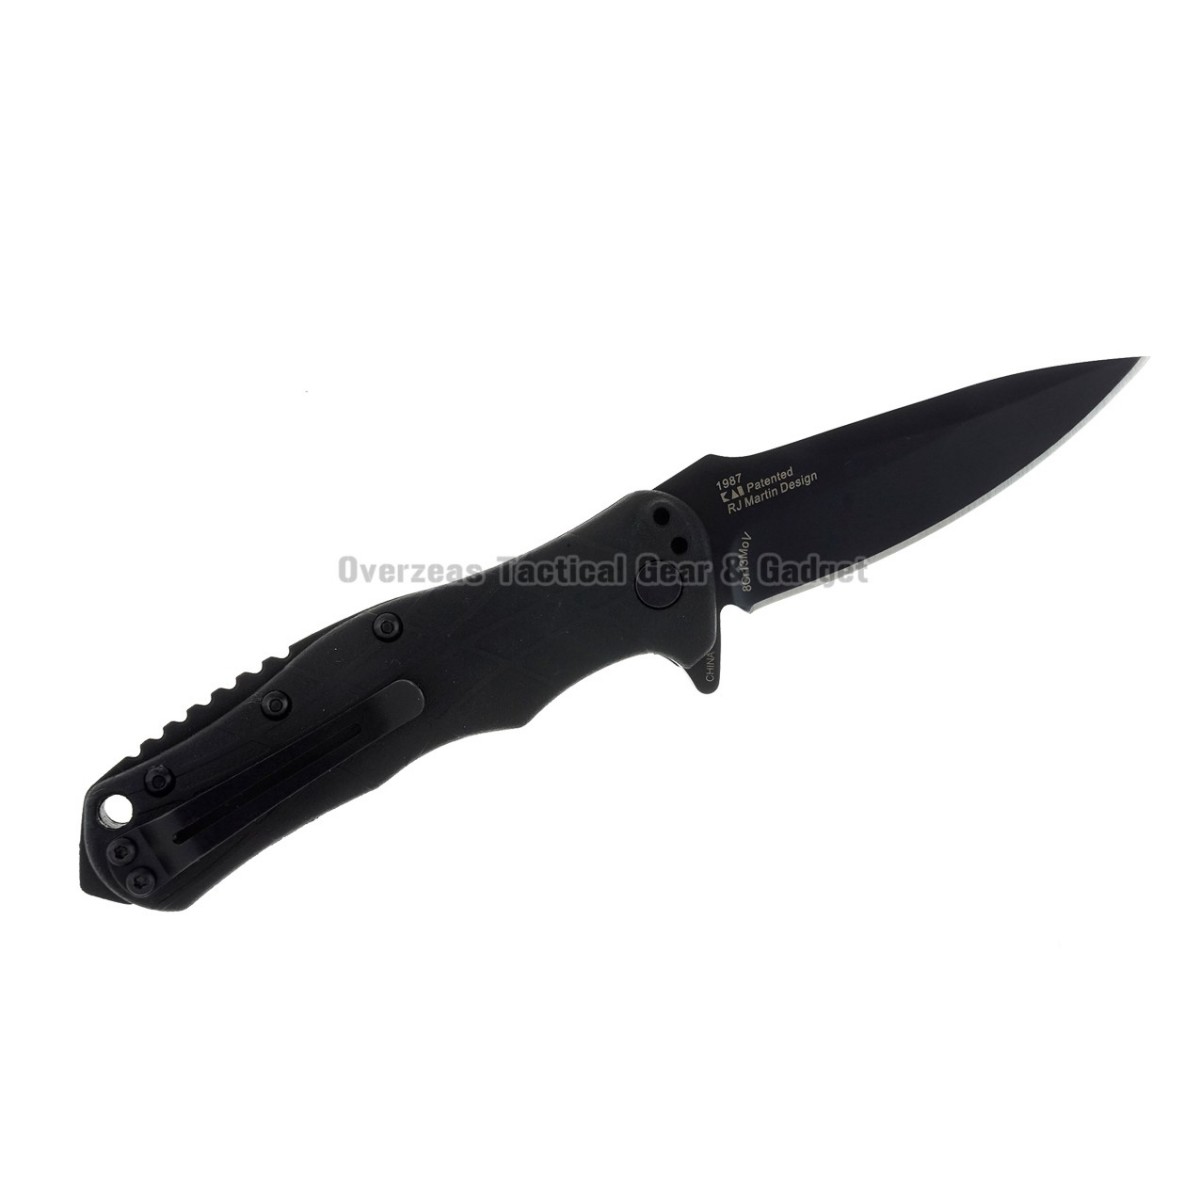 มีดพับ Kershaw RJ Tactical 3.0 Assisted Opening Knife (2.875" Black) 1987